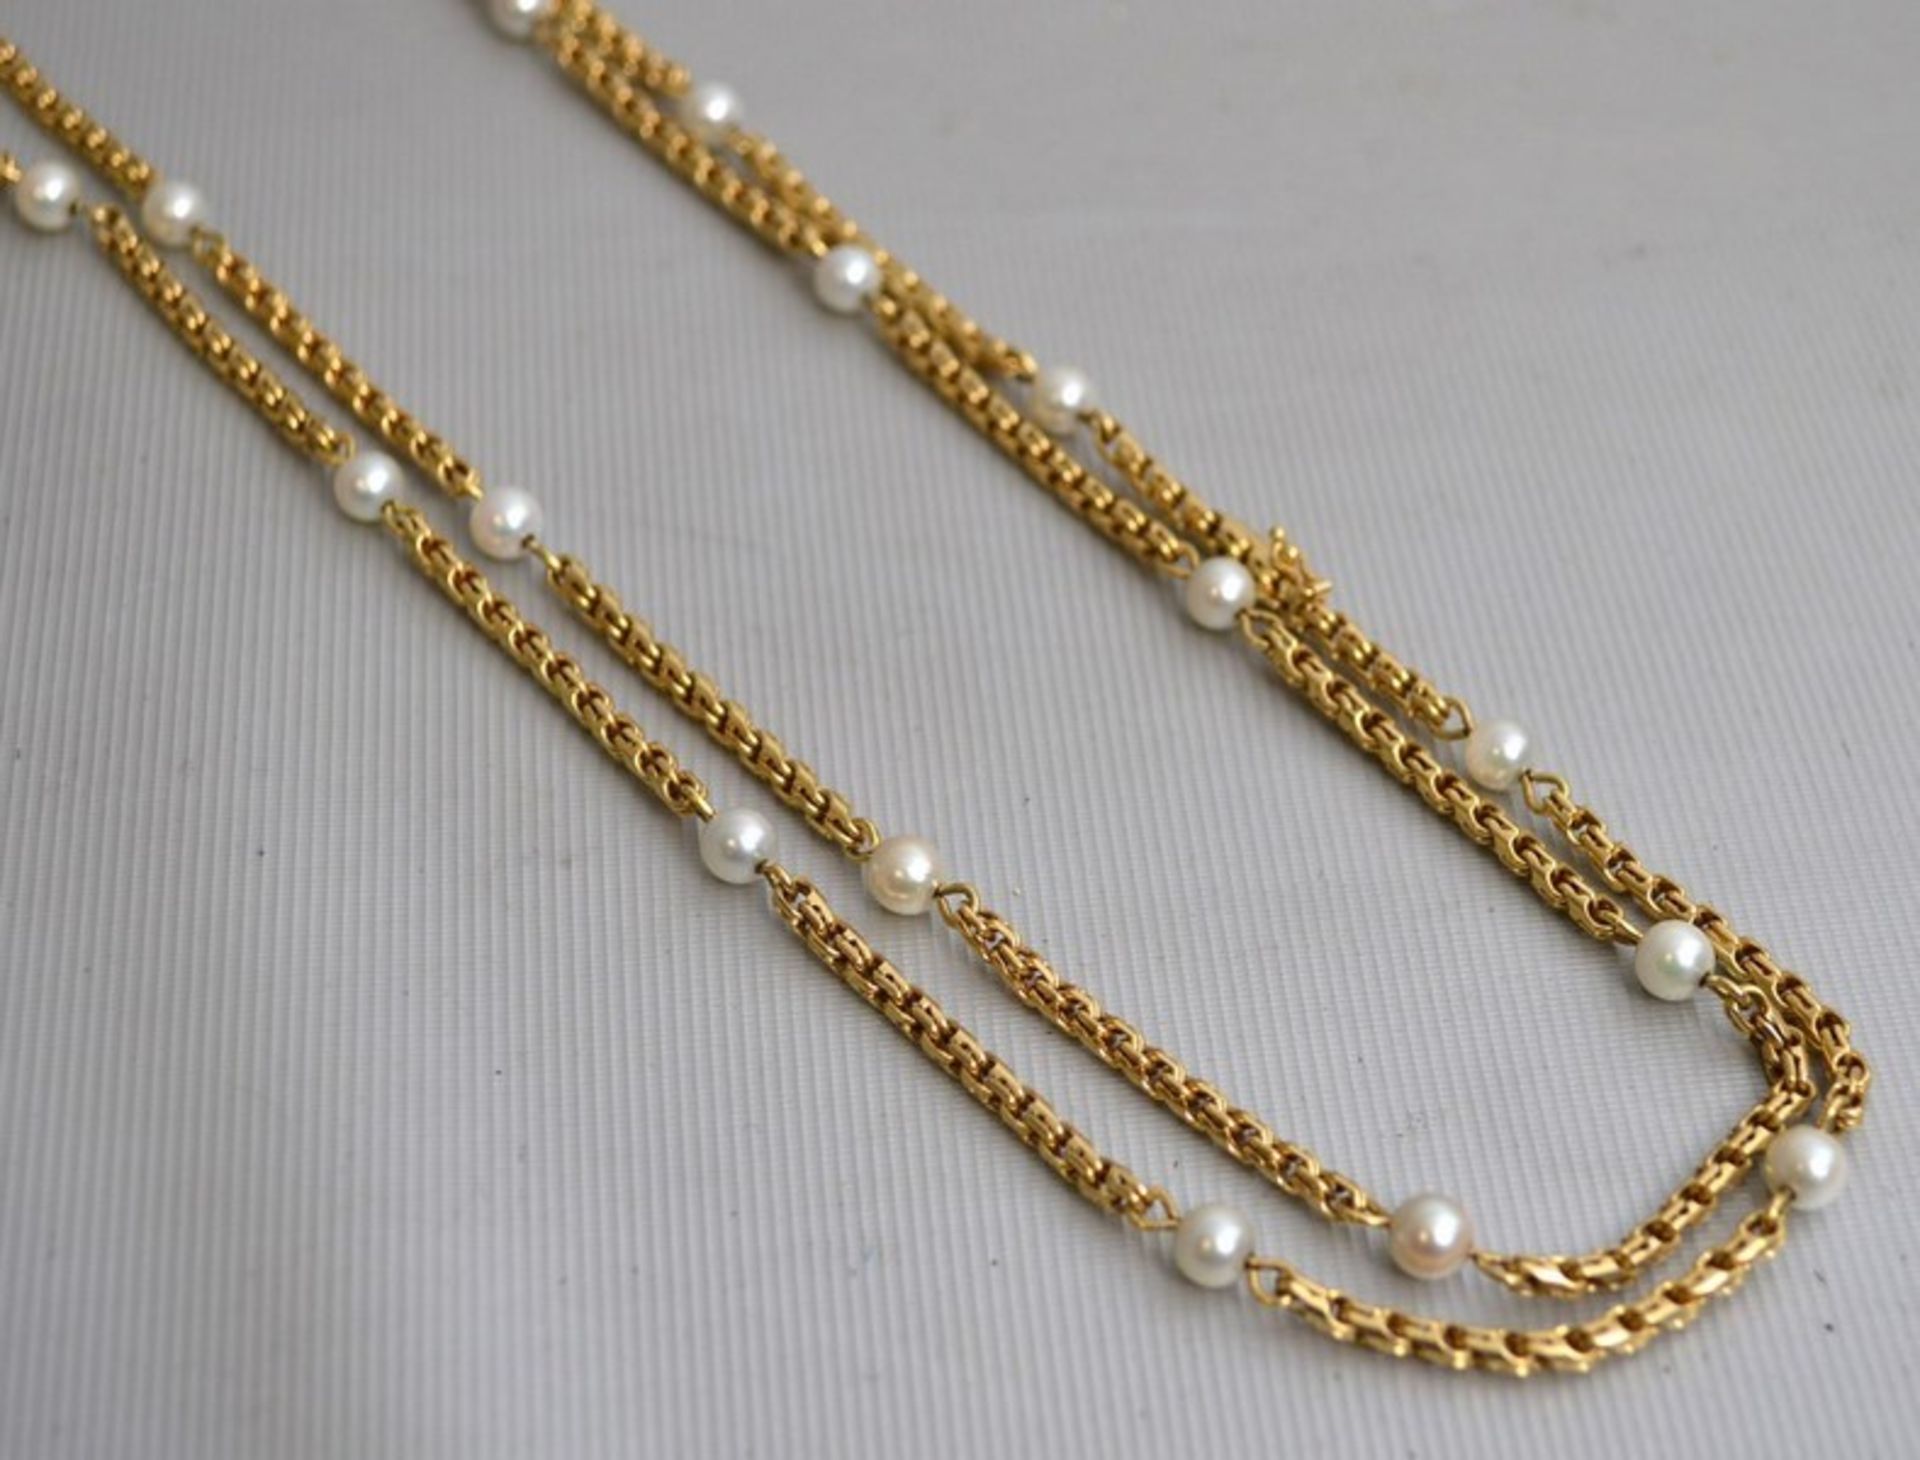 Halskette 14 kt. Gelbgold, mit 21 Perlen, Gesamtgewicht 98,9 g, L 106 cm